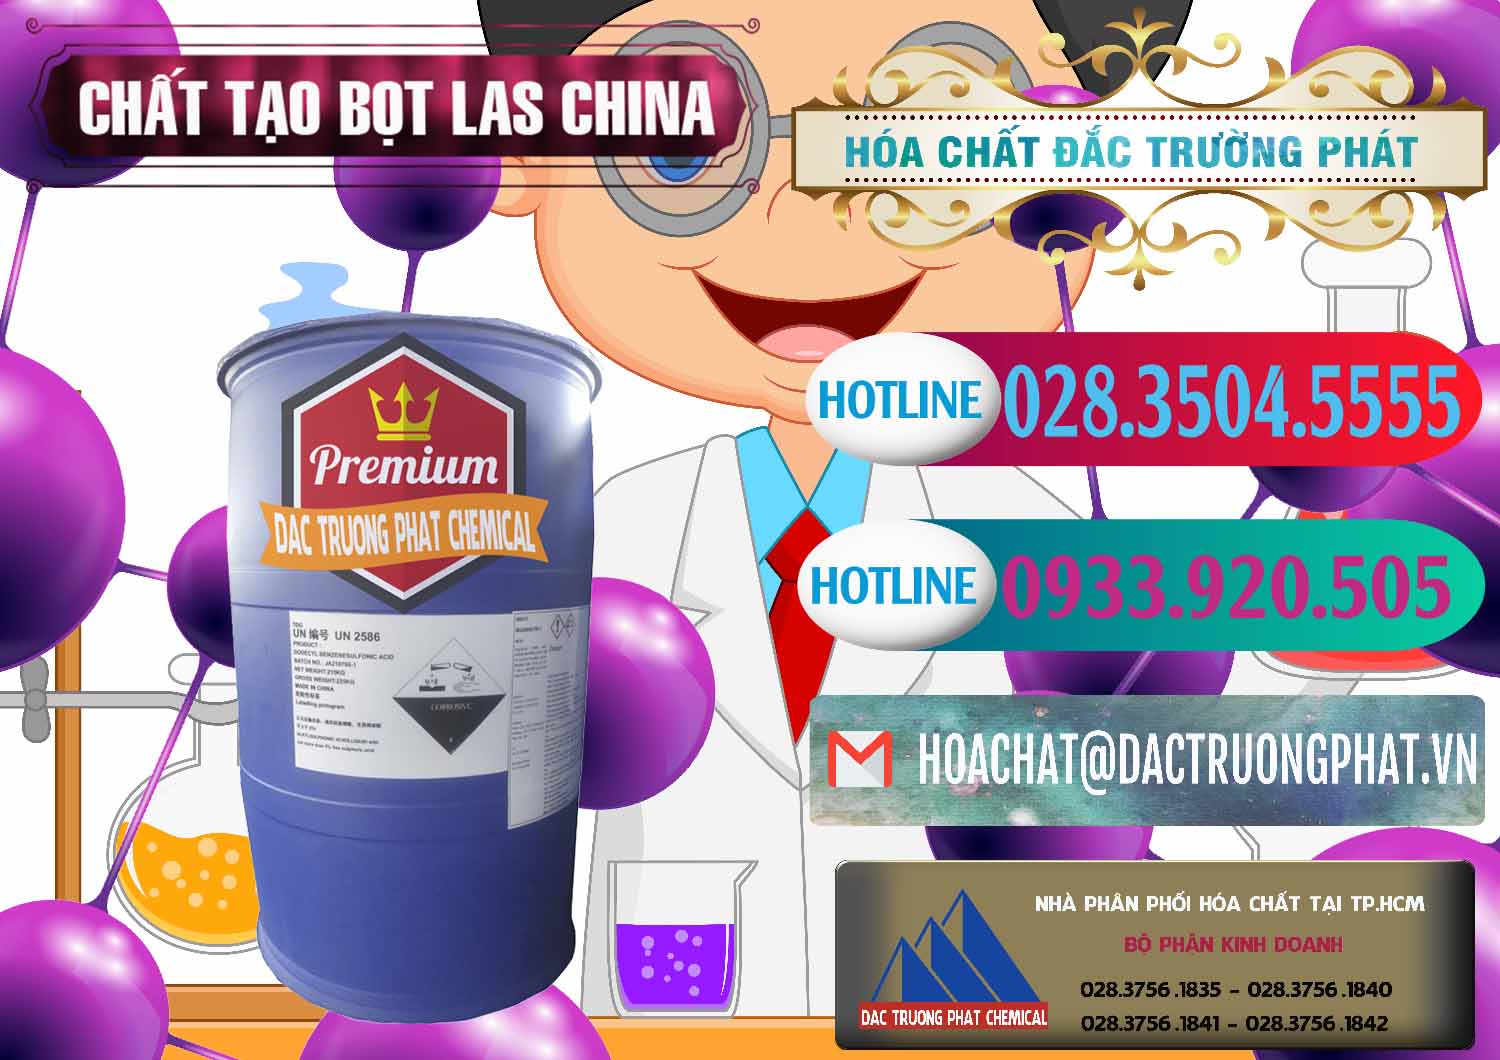 Nơi chuyên bán & cung cấp Chất tạo bọt Las Trung Quốc China - 0451 - Cung cấp và phân phối hóa chất tại TP.HCM - truongphat.vn